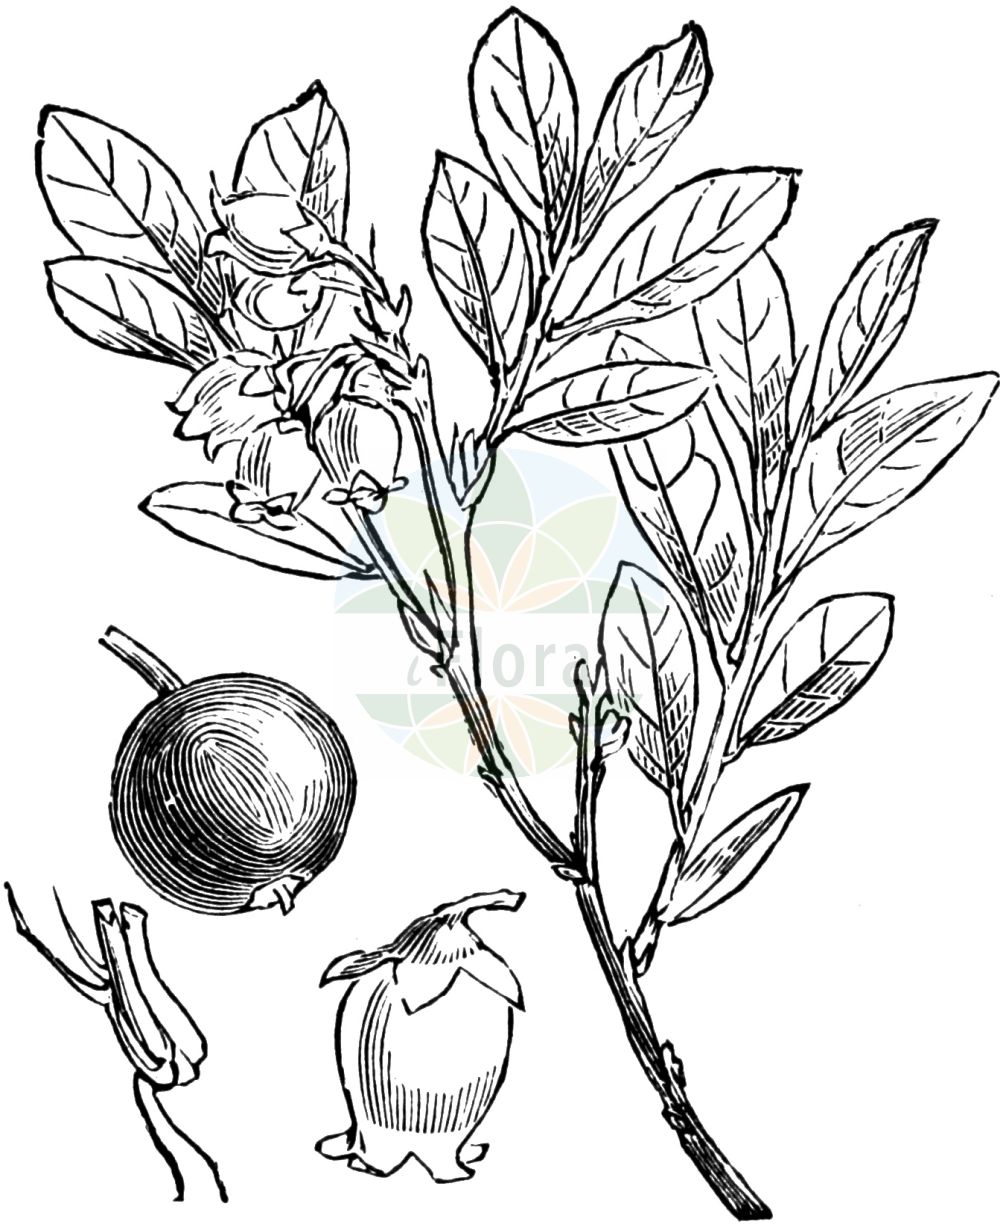 Historische Abbildung von Vaccinium uliginosum (Rauschbeere - Bog Bilberry). Das Bild zeigt Blatt, Bluete, Frucht und Same. ---- Historical Drawing of Vaccinium uliginosum (Rauschbeere - Bog Bilberry). The image is showing leaf, flower, fruit and seed.(Vaccinium uliginosum,Rauschbeere,Bog Bilberry,Vaccinium gaultherioides,Vaccinium uliginosum,Vaccinium uliginosum var. microphyllum,Rauschbeere,Gaultheria-aehnliche Rauschbeere,Gebirgs-Moorbeere,Moorbeere,Moor-Heidelbeere,Sumpf-Heidelbeere,Trunkelbeere,Bog Bilberry,Alpine Blueberry,Bog Blueberry,Bog Whortleberry,Northern Bilberry,Vaccinium,Heidelbeere,Blueberry,Ericaceae,Heidekrautgewächse,Heath family,Blatt,Bluete,Frucht,Same,leaf,flower,fruit,seed,Fitch et al. (1880))